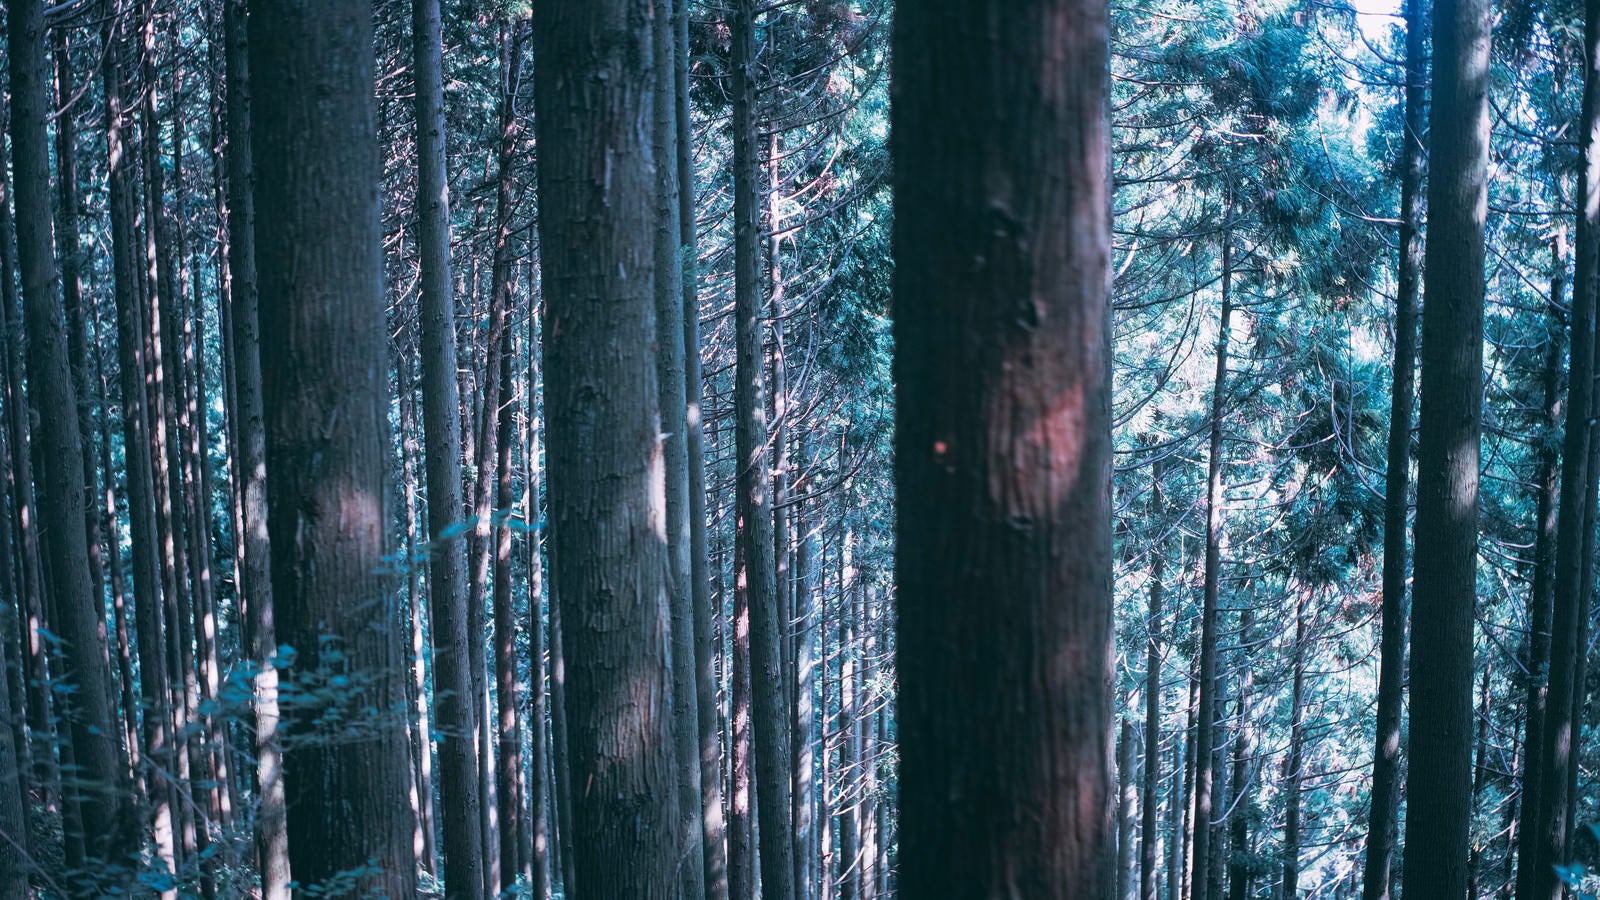 「どこまでも続く杉の木々」の写真